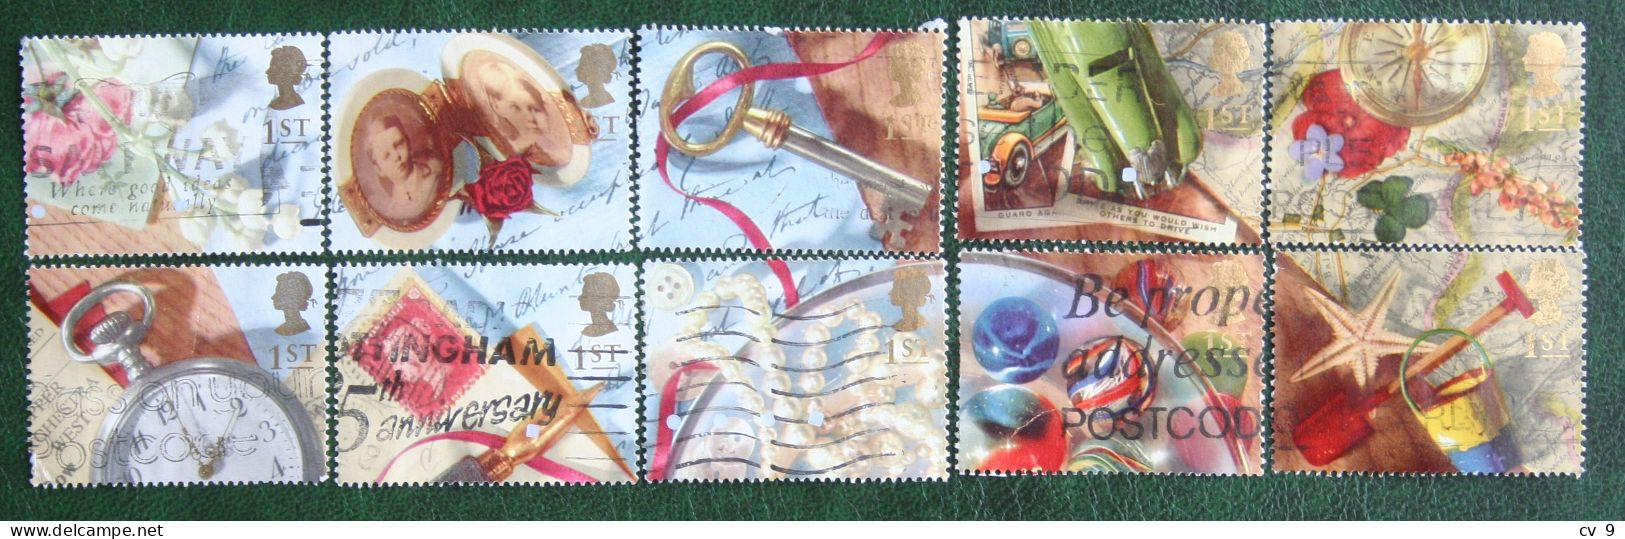 Greetings Booklet Stamps Memories (Mi 1377-1386) 1992 Used Gebruikt Oblitere ENGLAND GRANDE-BRETAGNE GB GREAT BRITAIN - Oblitérés